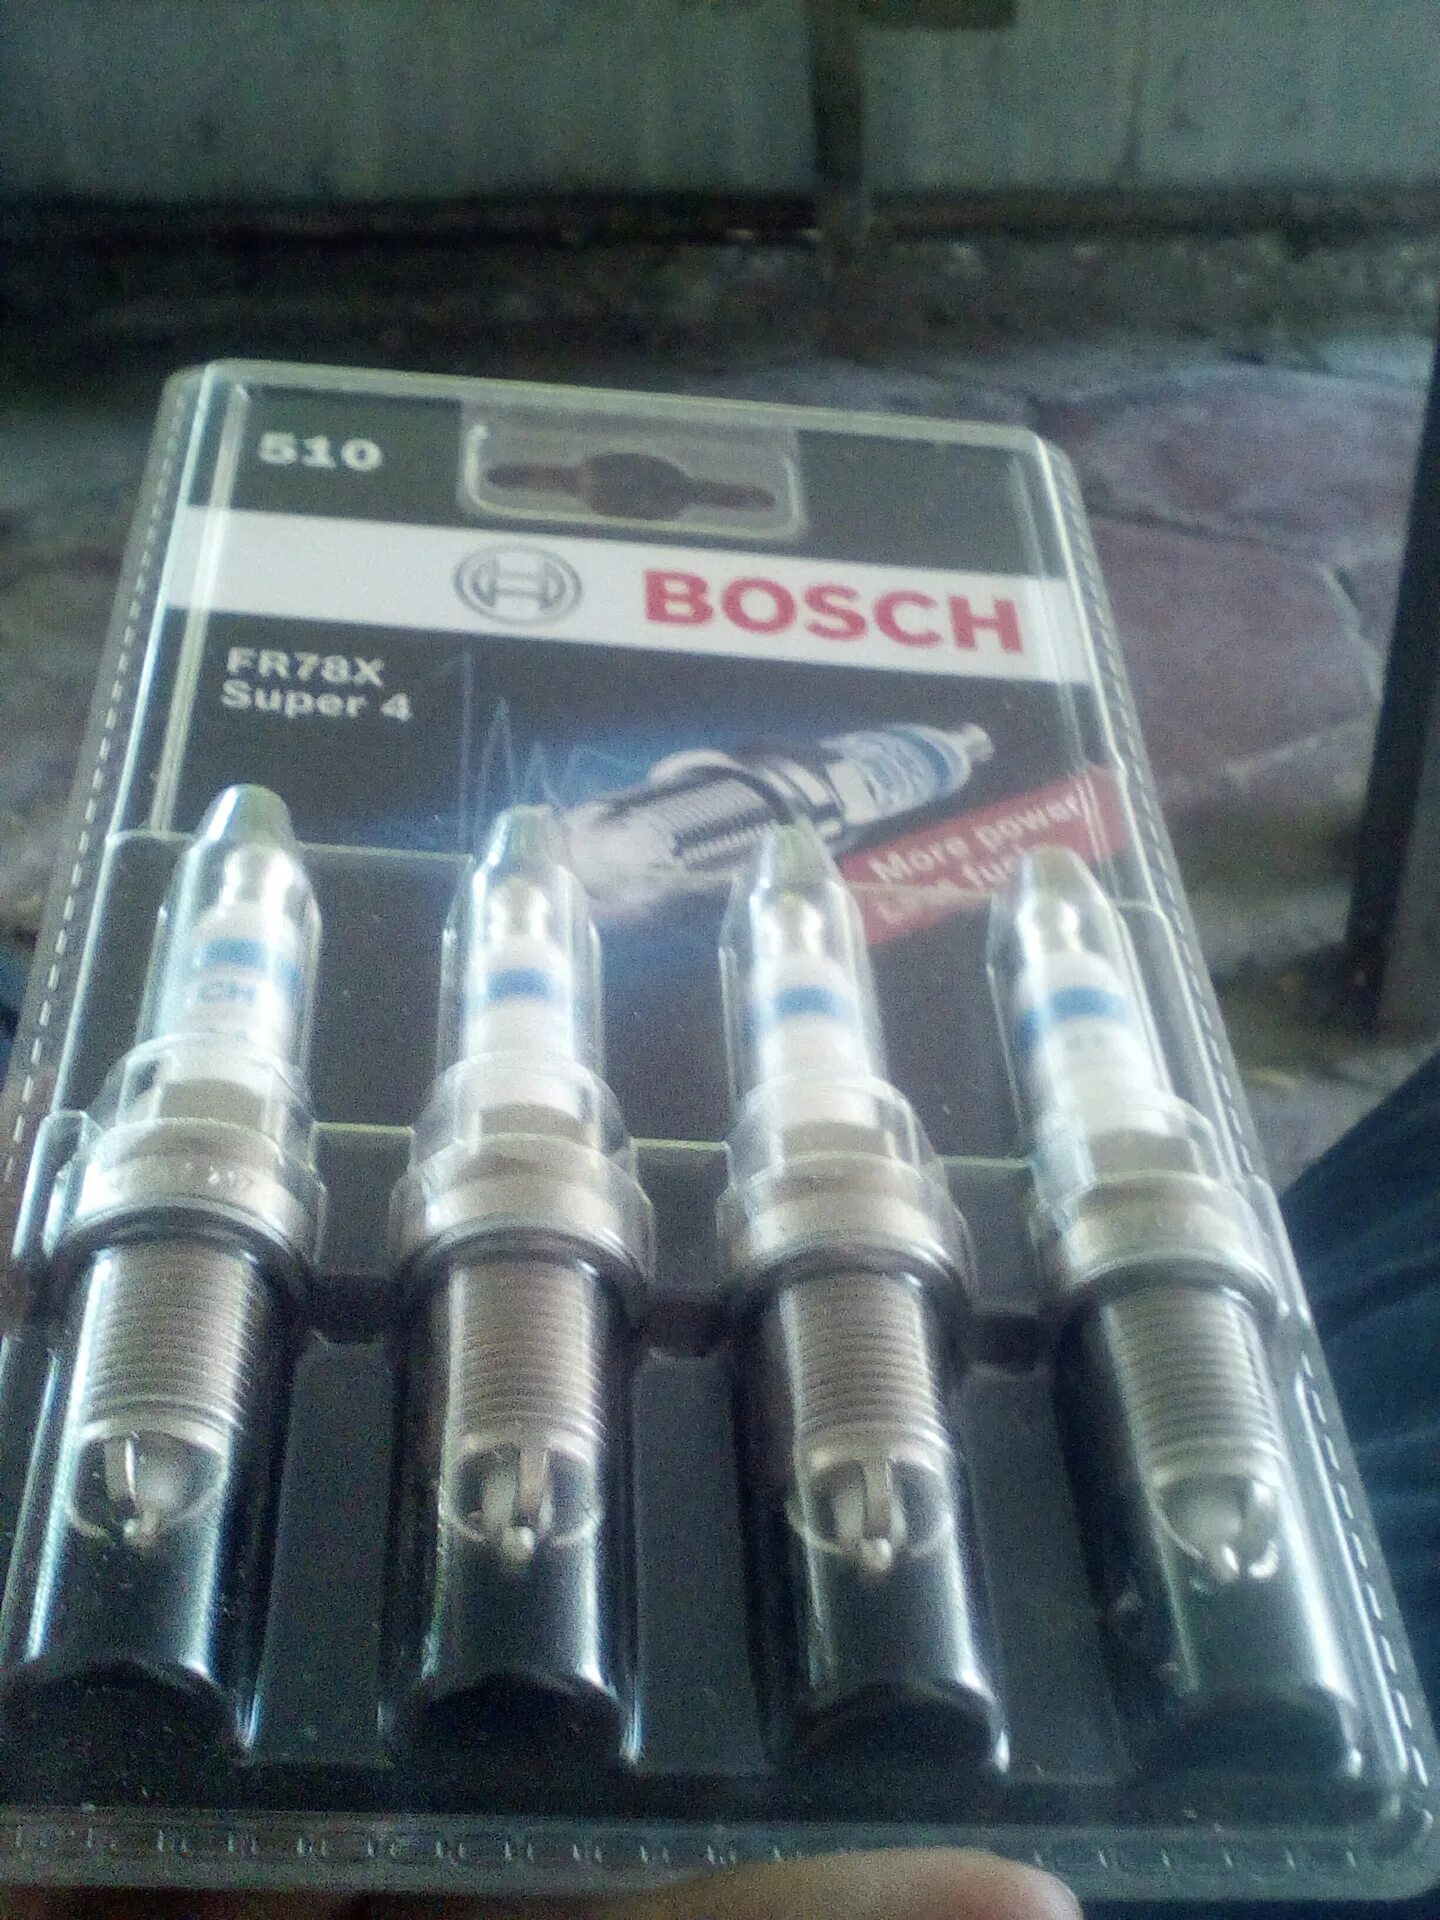 Купить свечи на приору. Свечи зажигания Bosch fr78x ВАЗ 2112. Свечи Bosch fr78x n50 для Hyundai Getz. Свечи зажигания бош супер 4 fr78x Применяемость. Свечи бош на приору 8 клапанов.